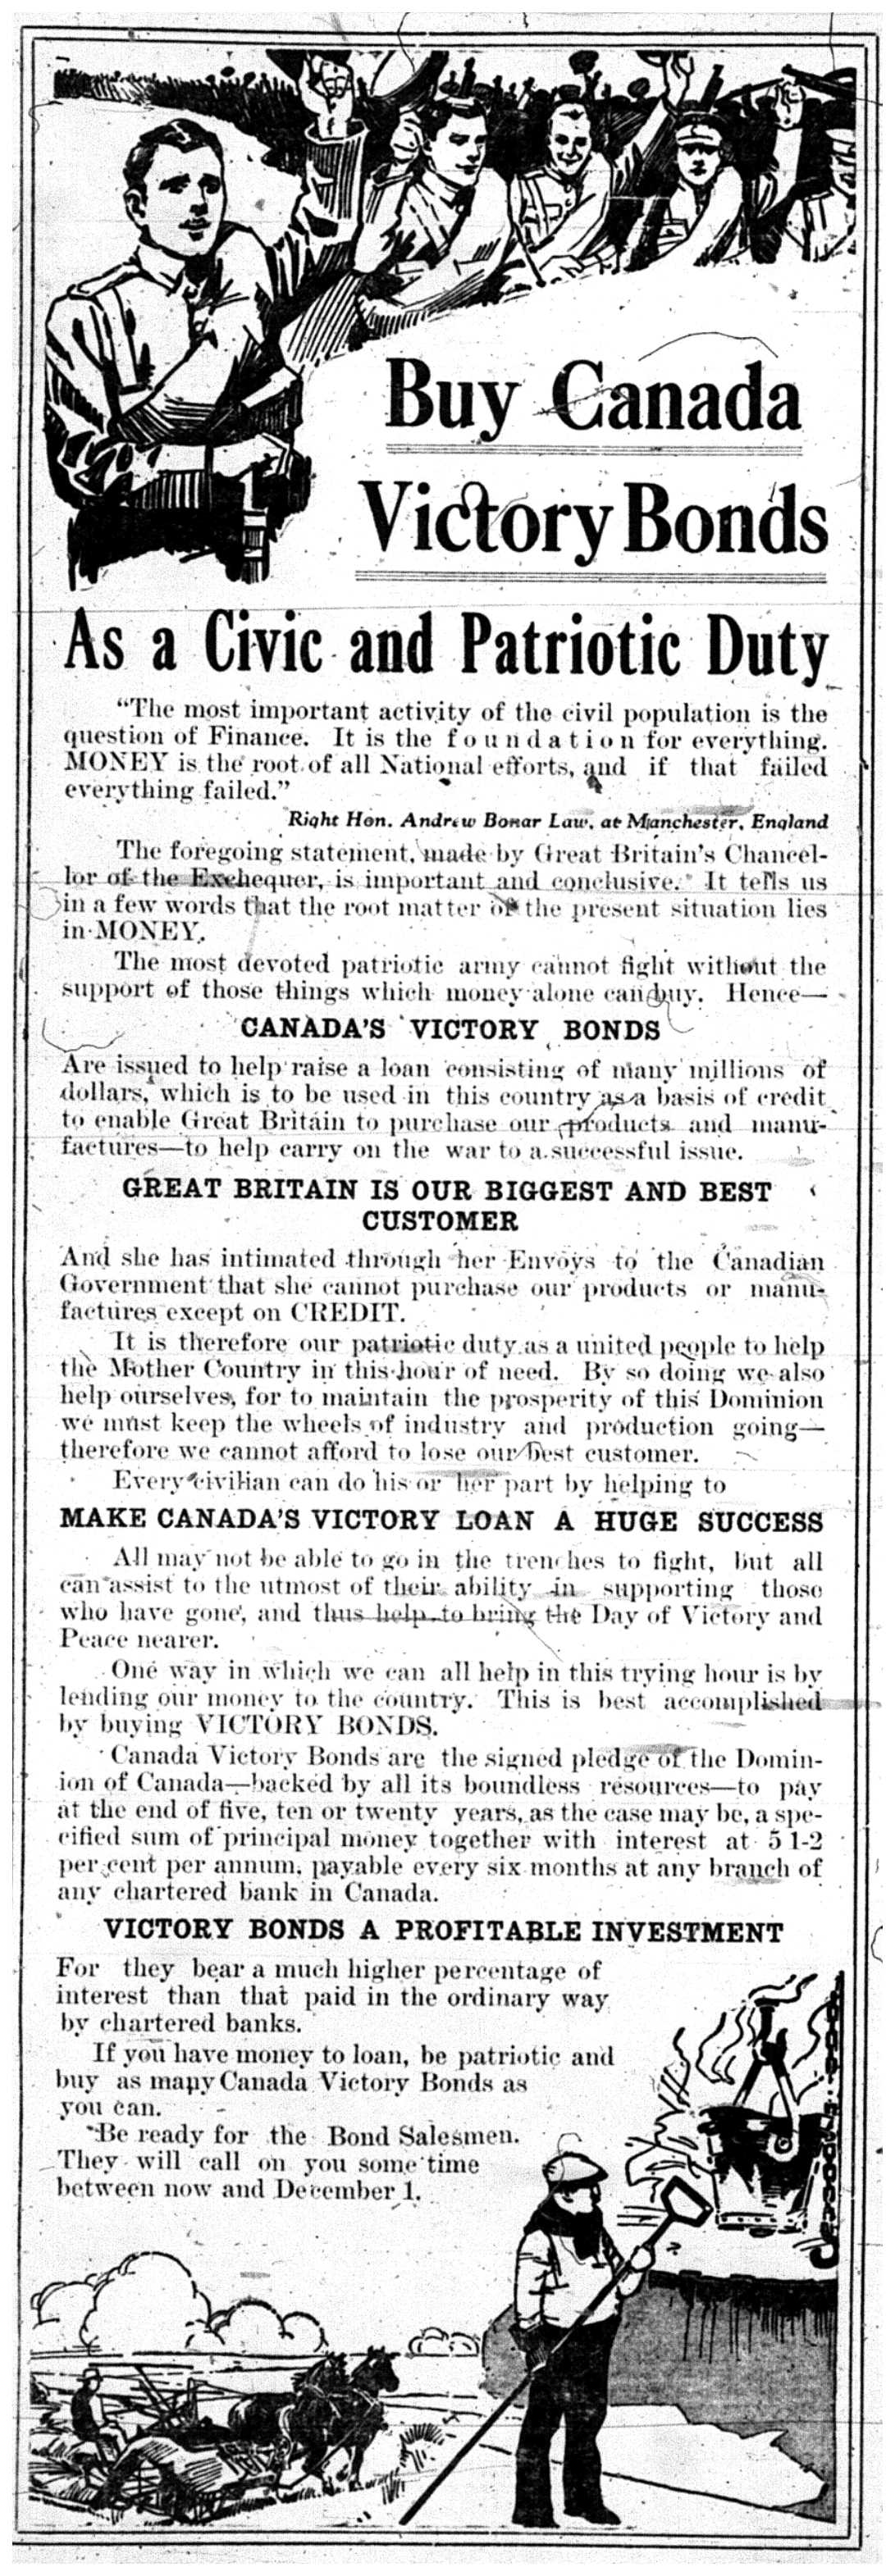 "Buy Canada Victory Bonds"